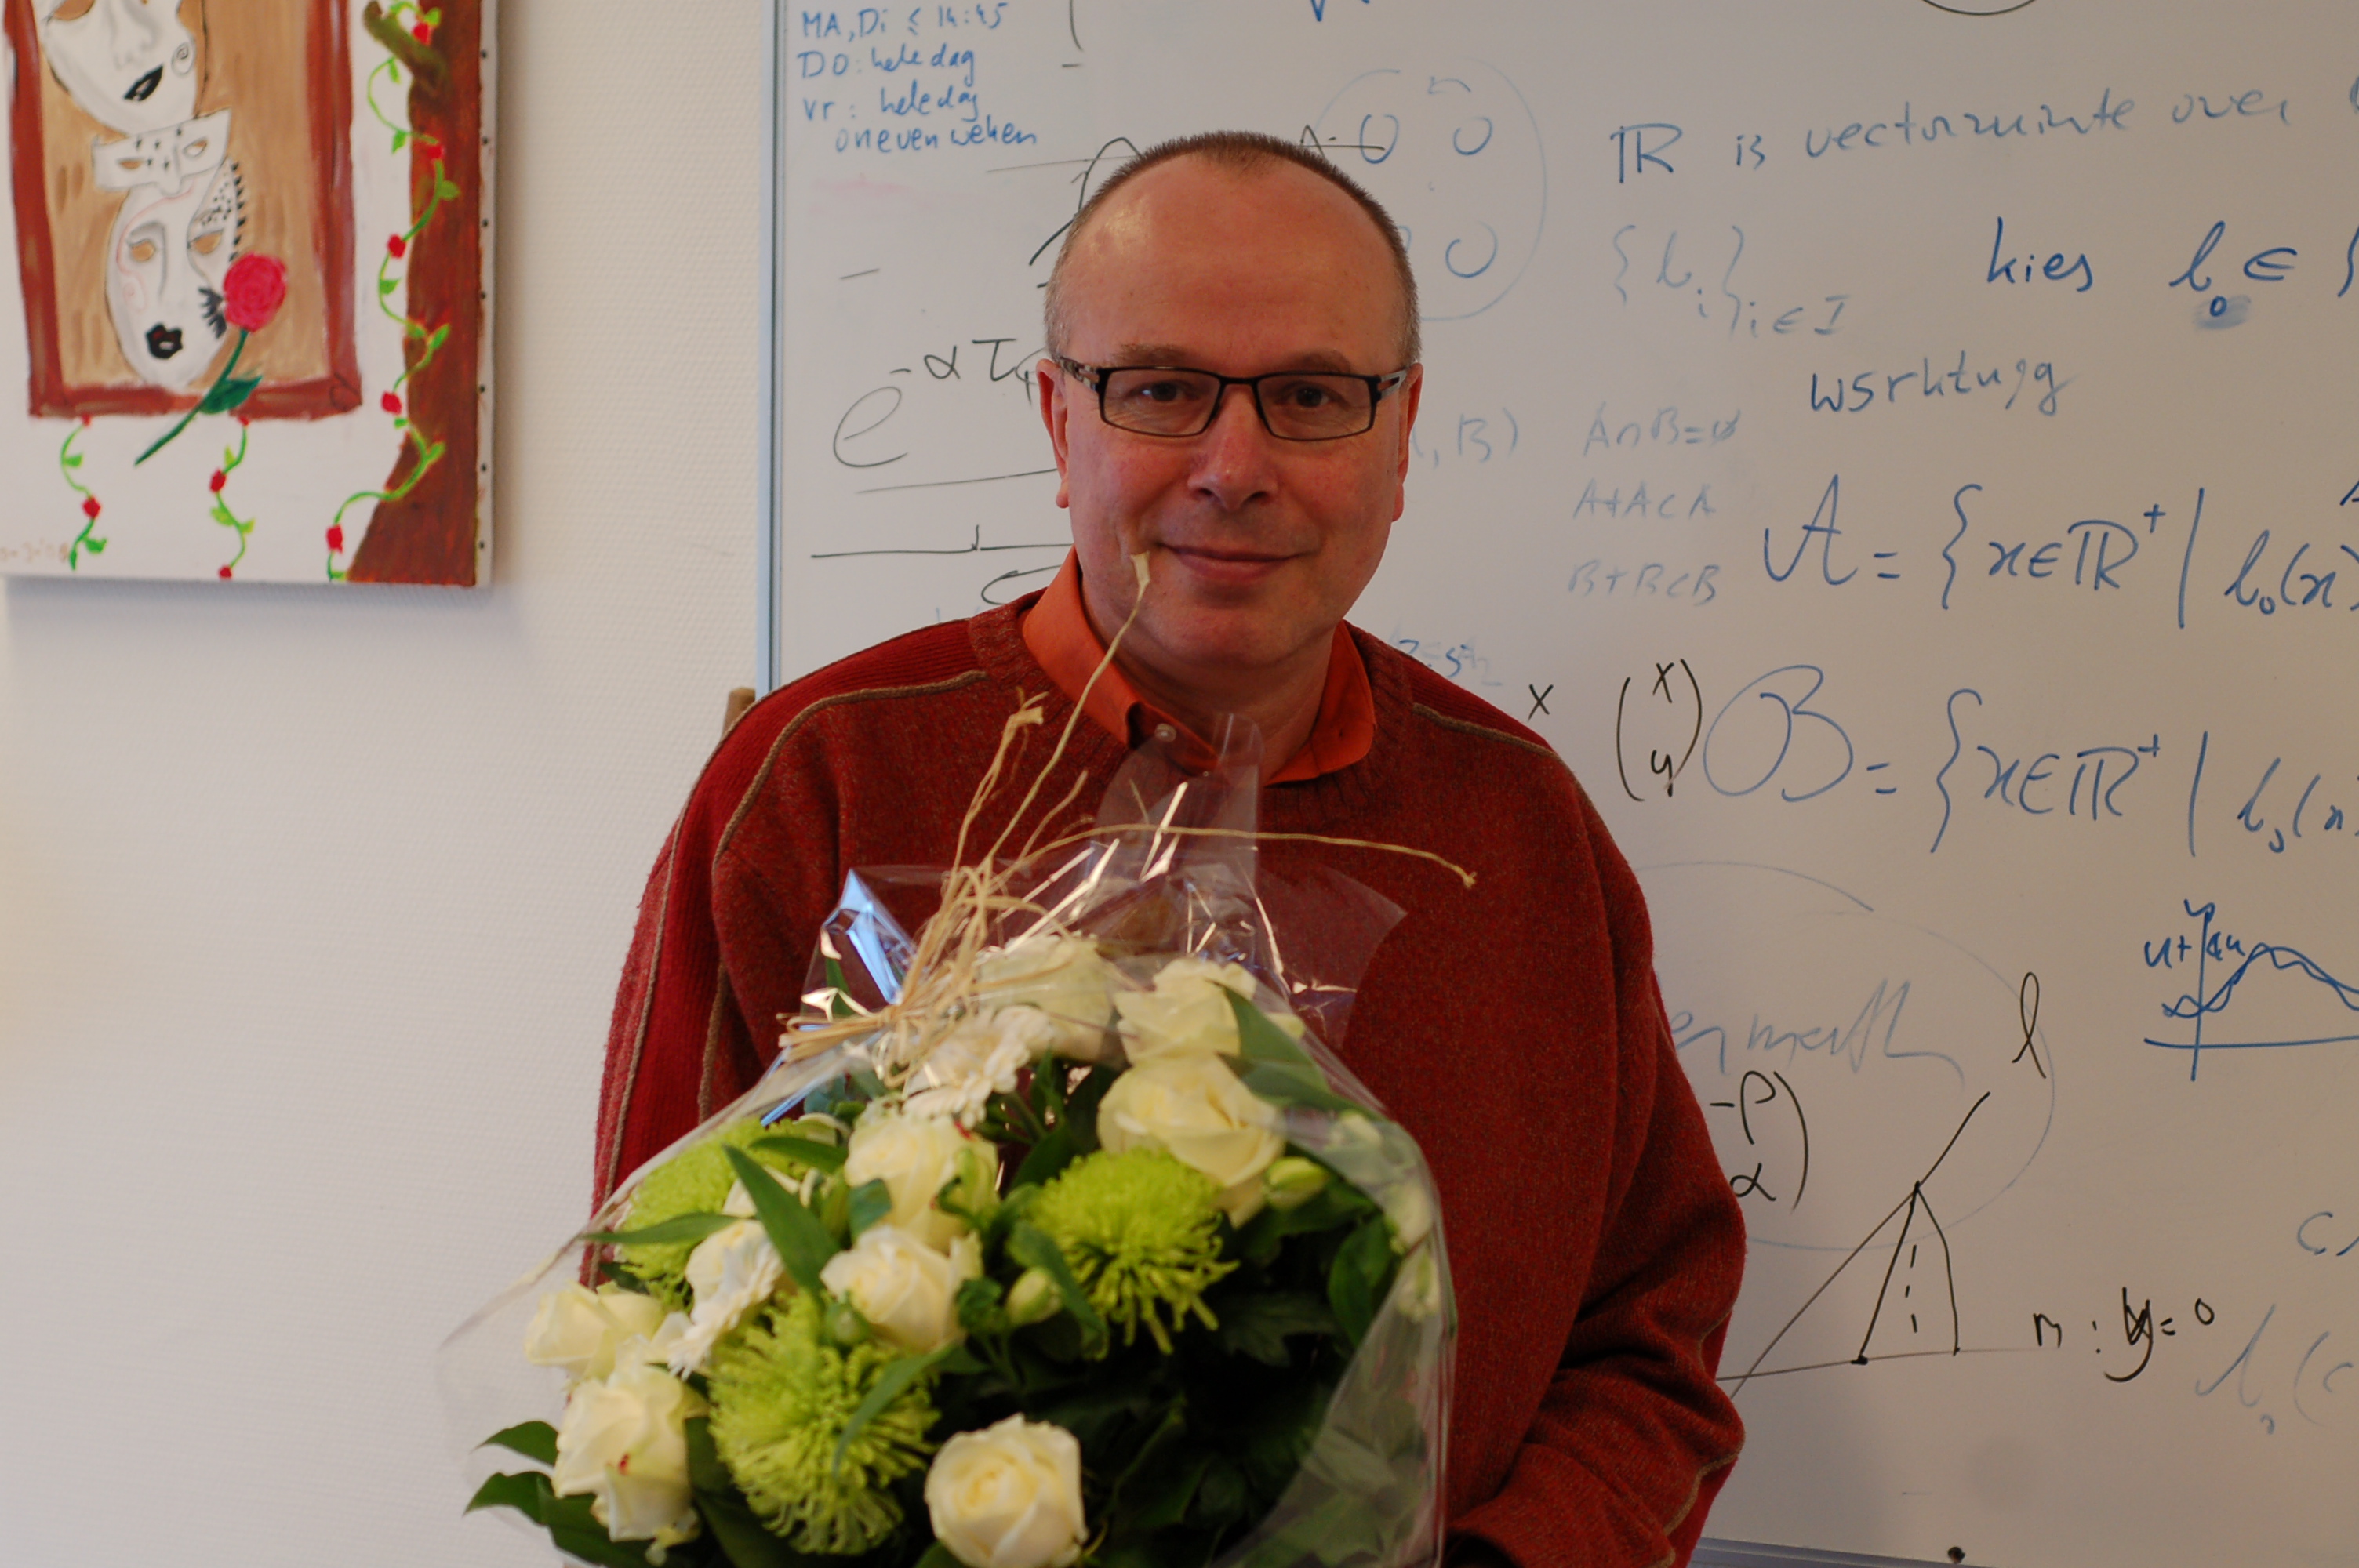 Polderman receives his education bouquet